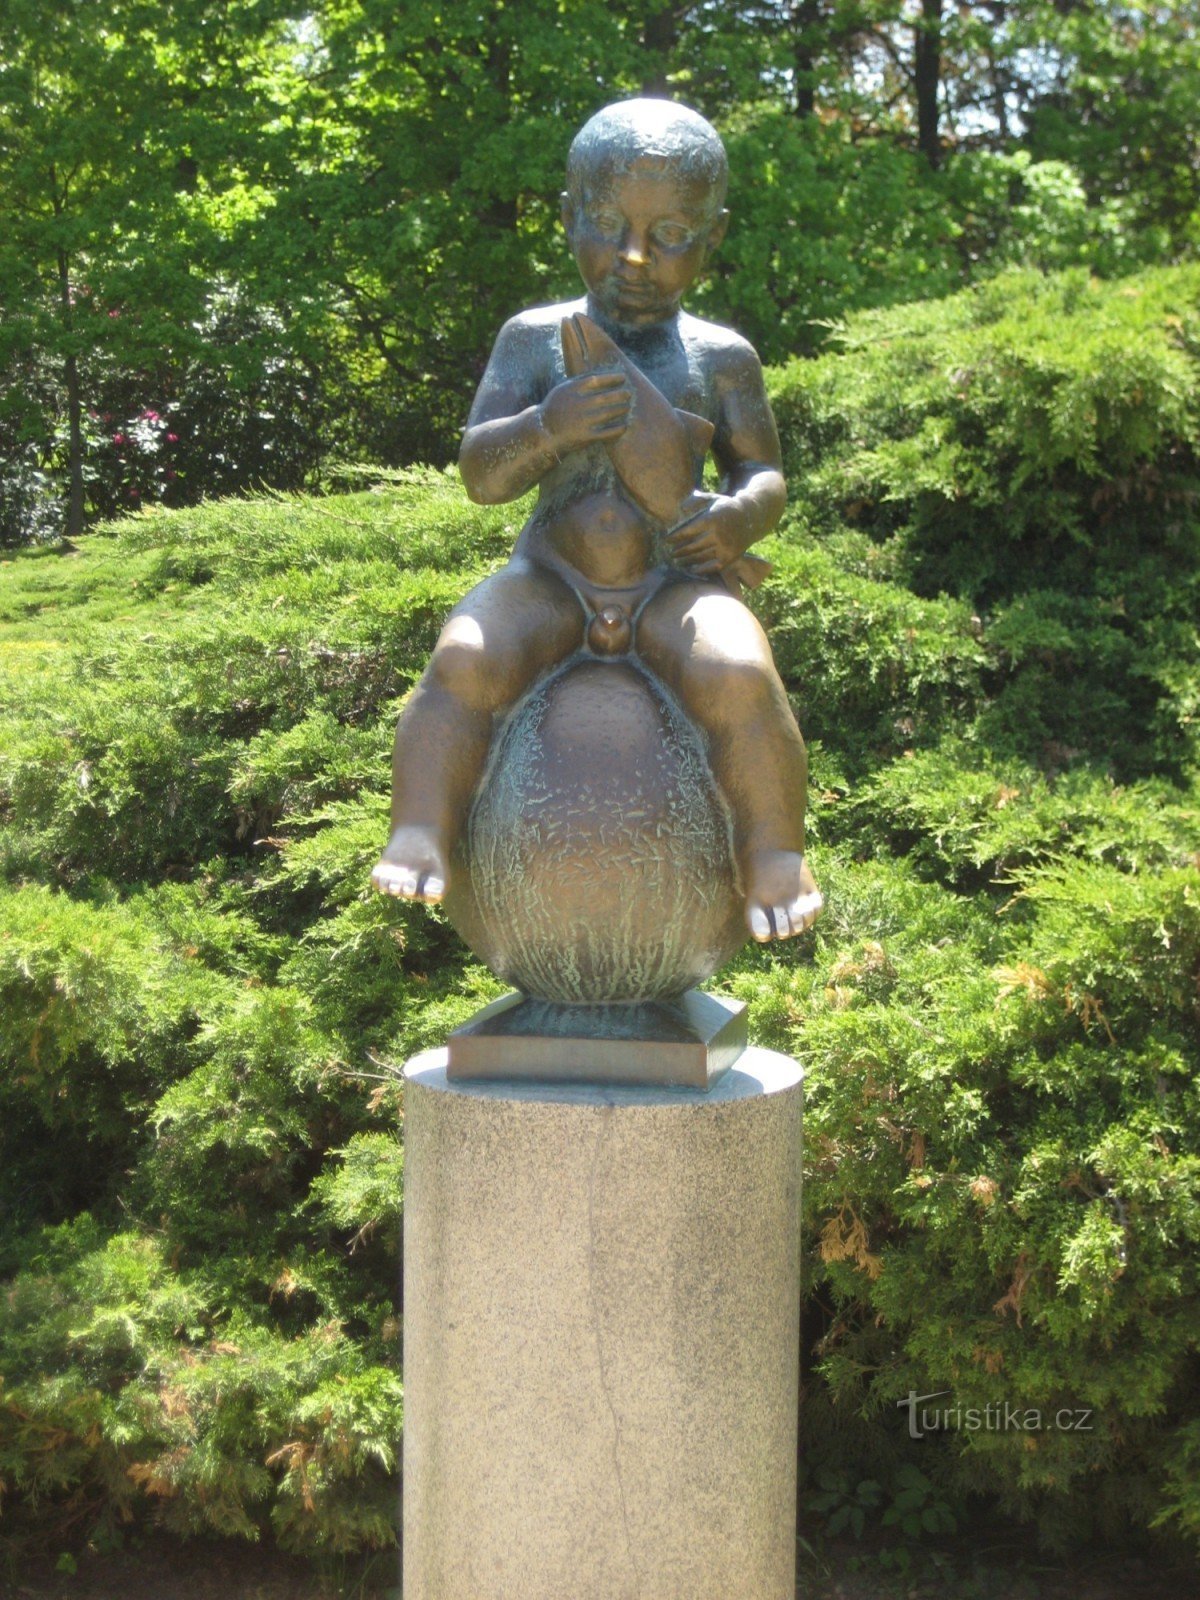 Статуя Франциска - сфотографировано 19.5.2012 мая XNUMX г.